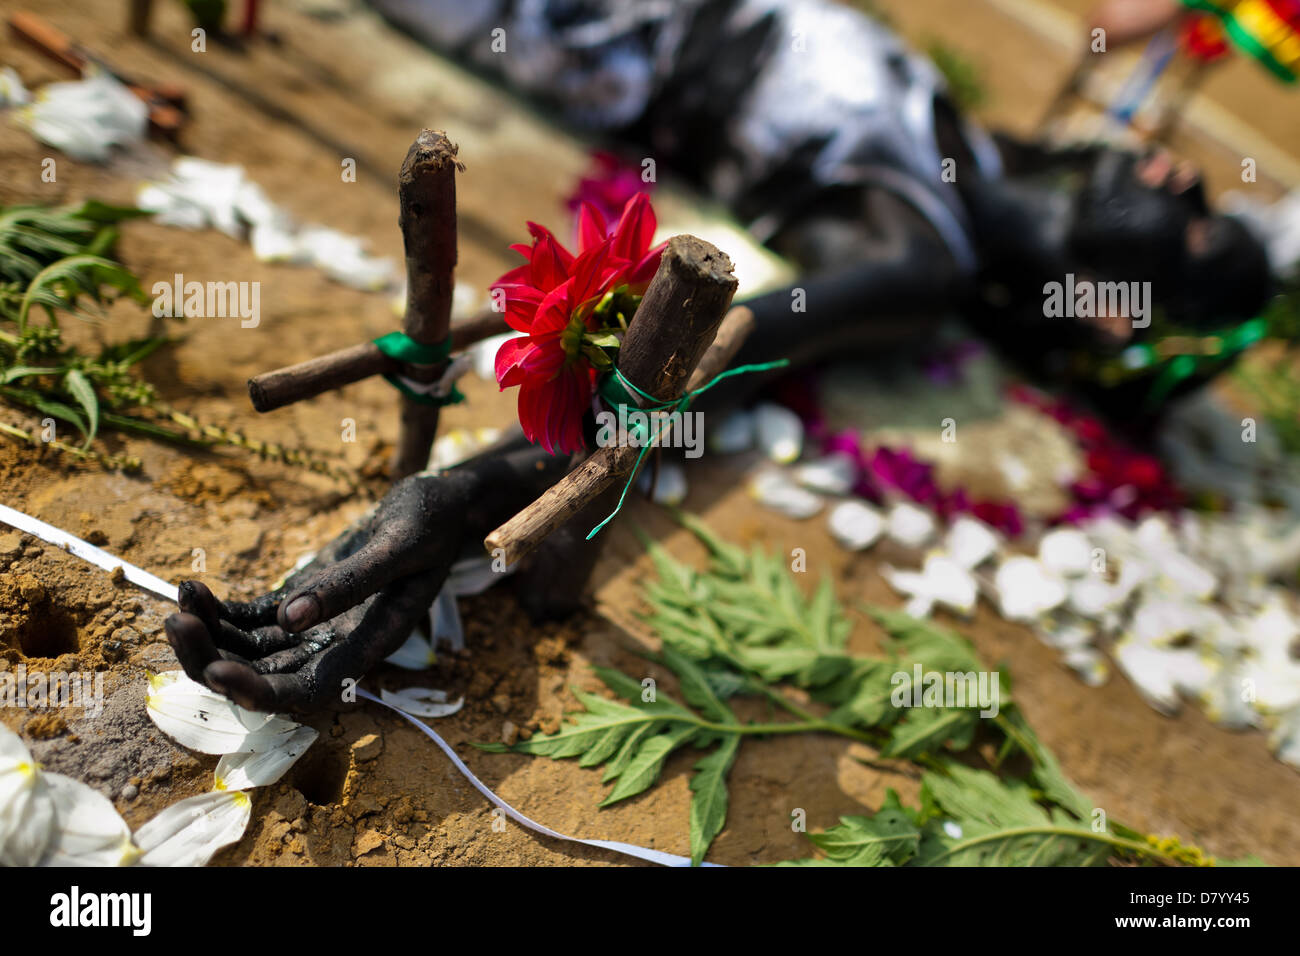 Diana R., der behauptet, von Geistern besessen werden, liegt auf dem Boden, während ein Ritual des Exorzismus von Blumen umgeben. Stockfoto